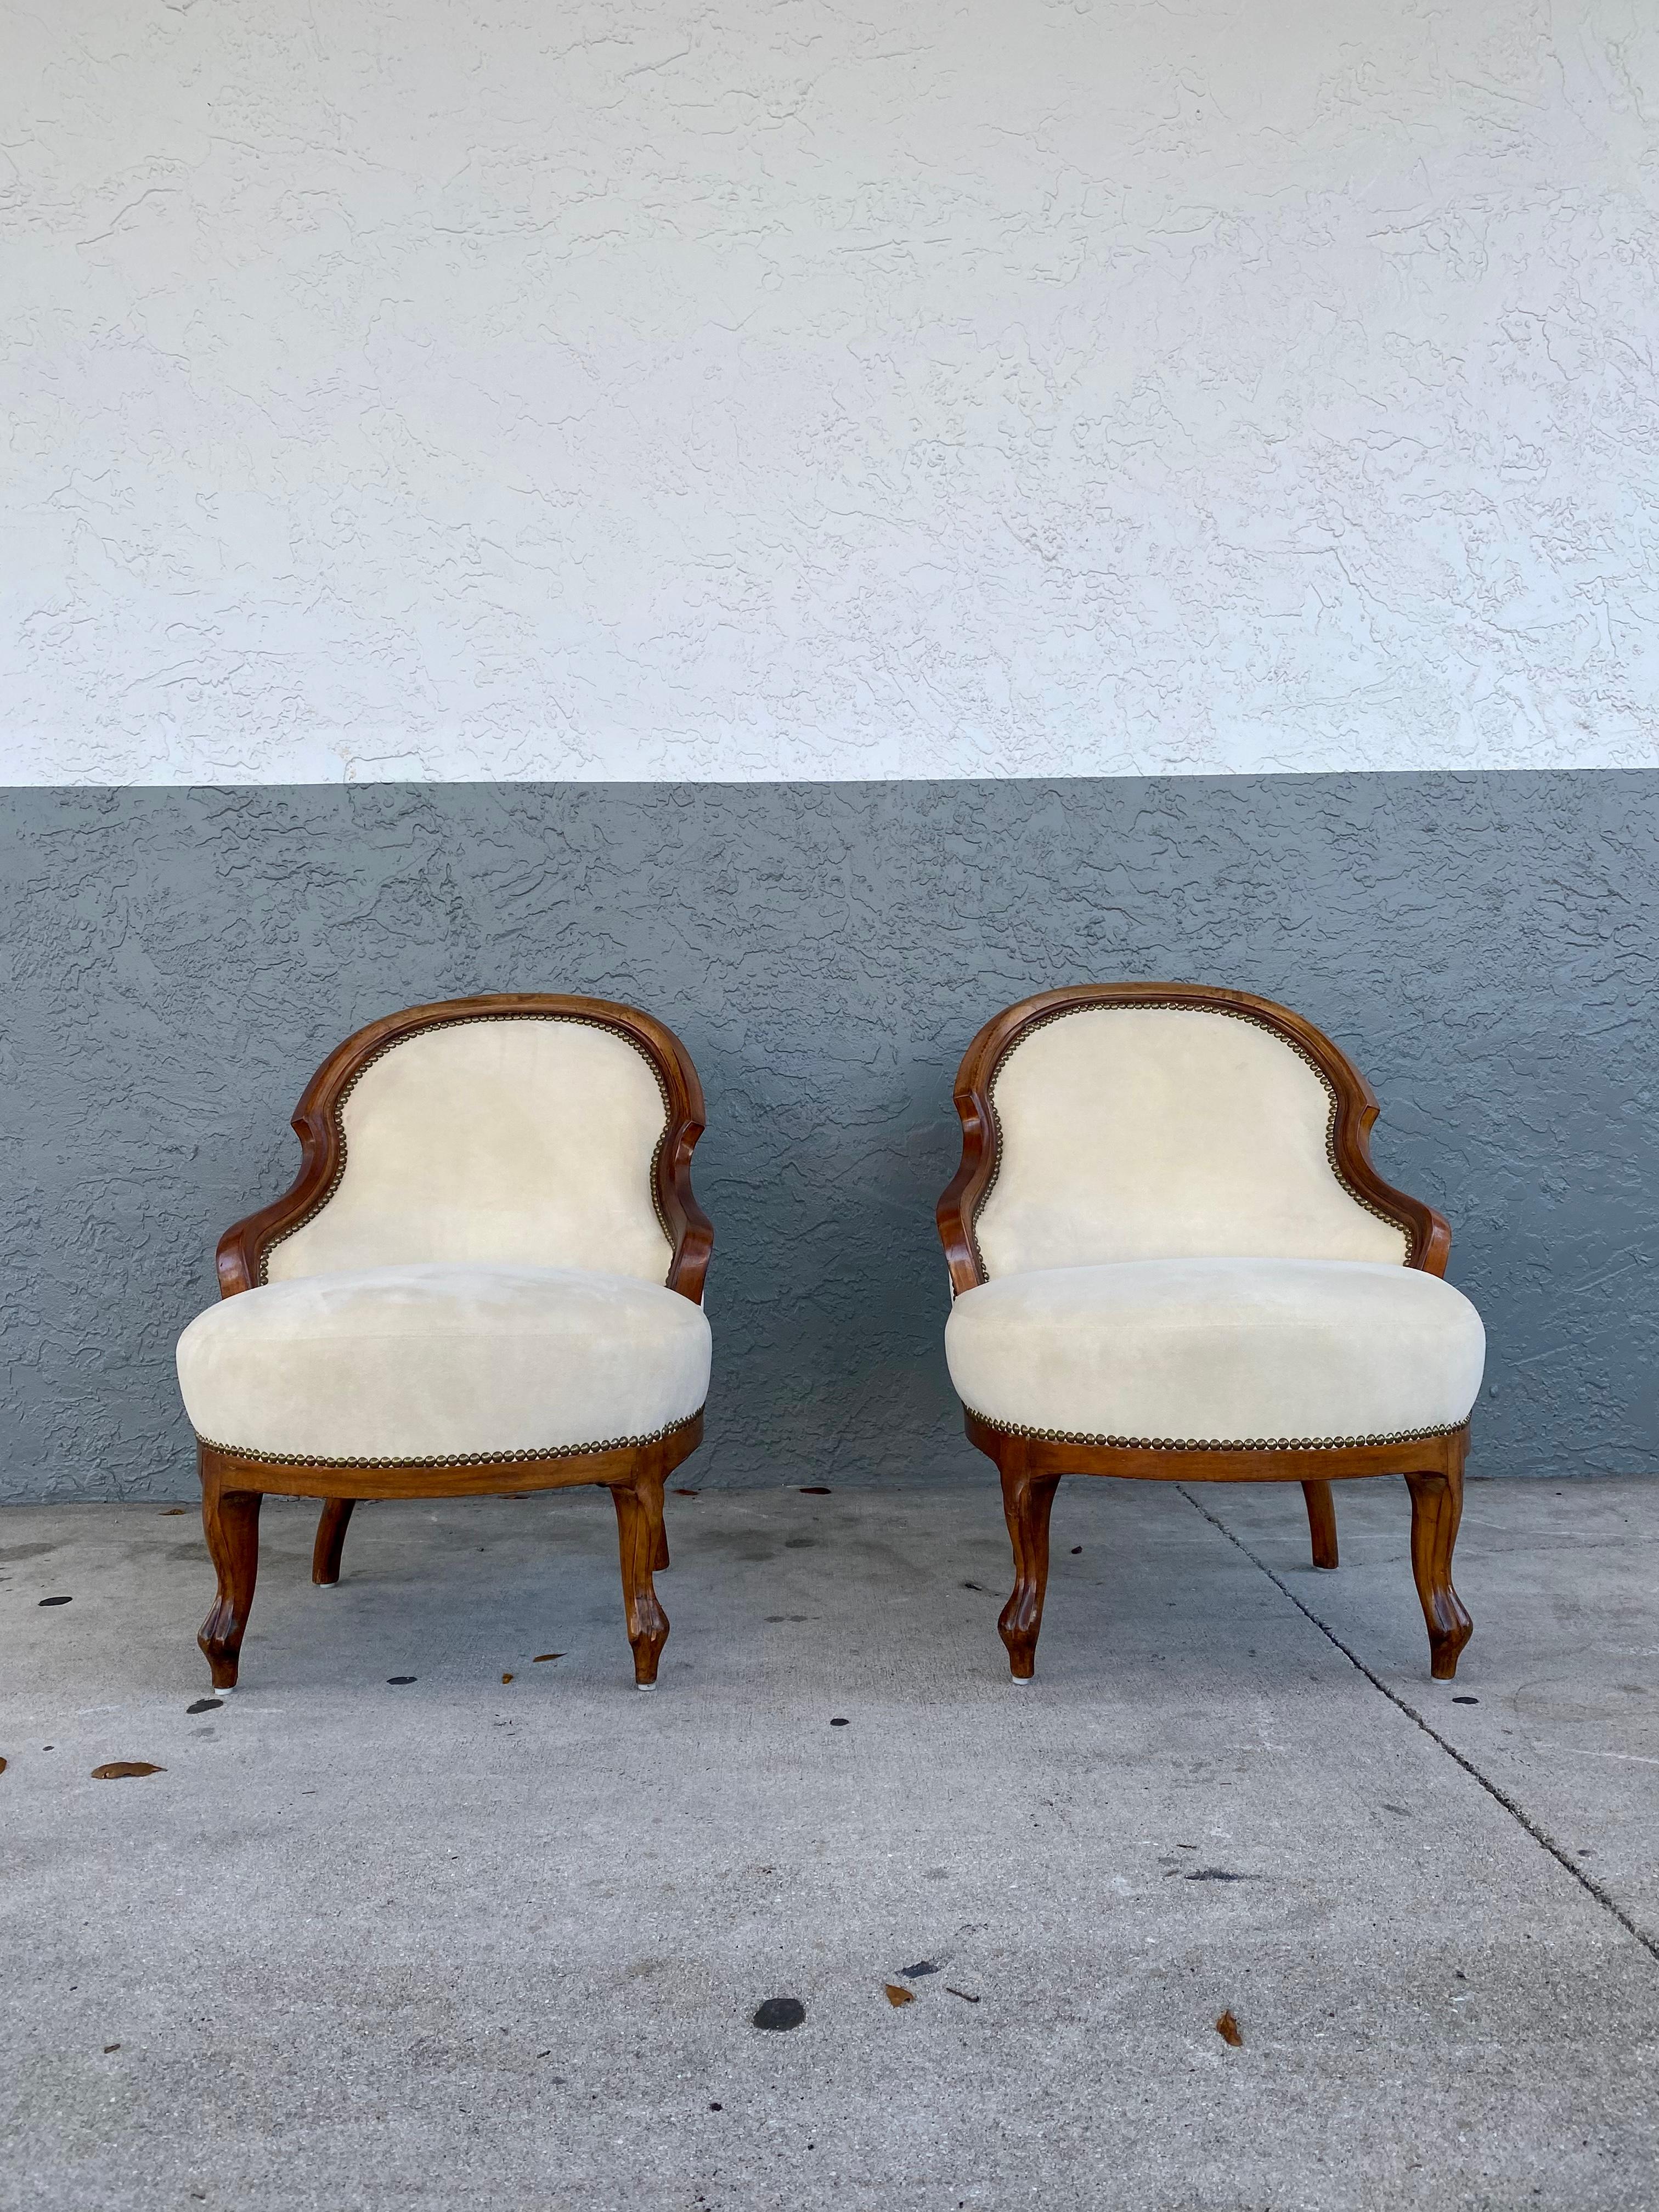 Une superbe paire de chaises à dossier en forme de cuillère dans le style victorien ancien. Il a été fabriqué en Angleterre et date d'environ les années 1940. Il est de belle qualité, le cadre en bois foncé est magnifiquement sculpté et a une belle